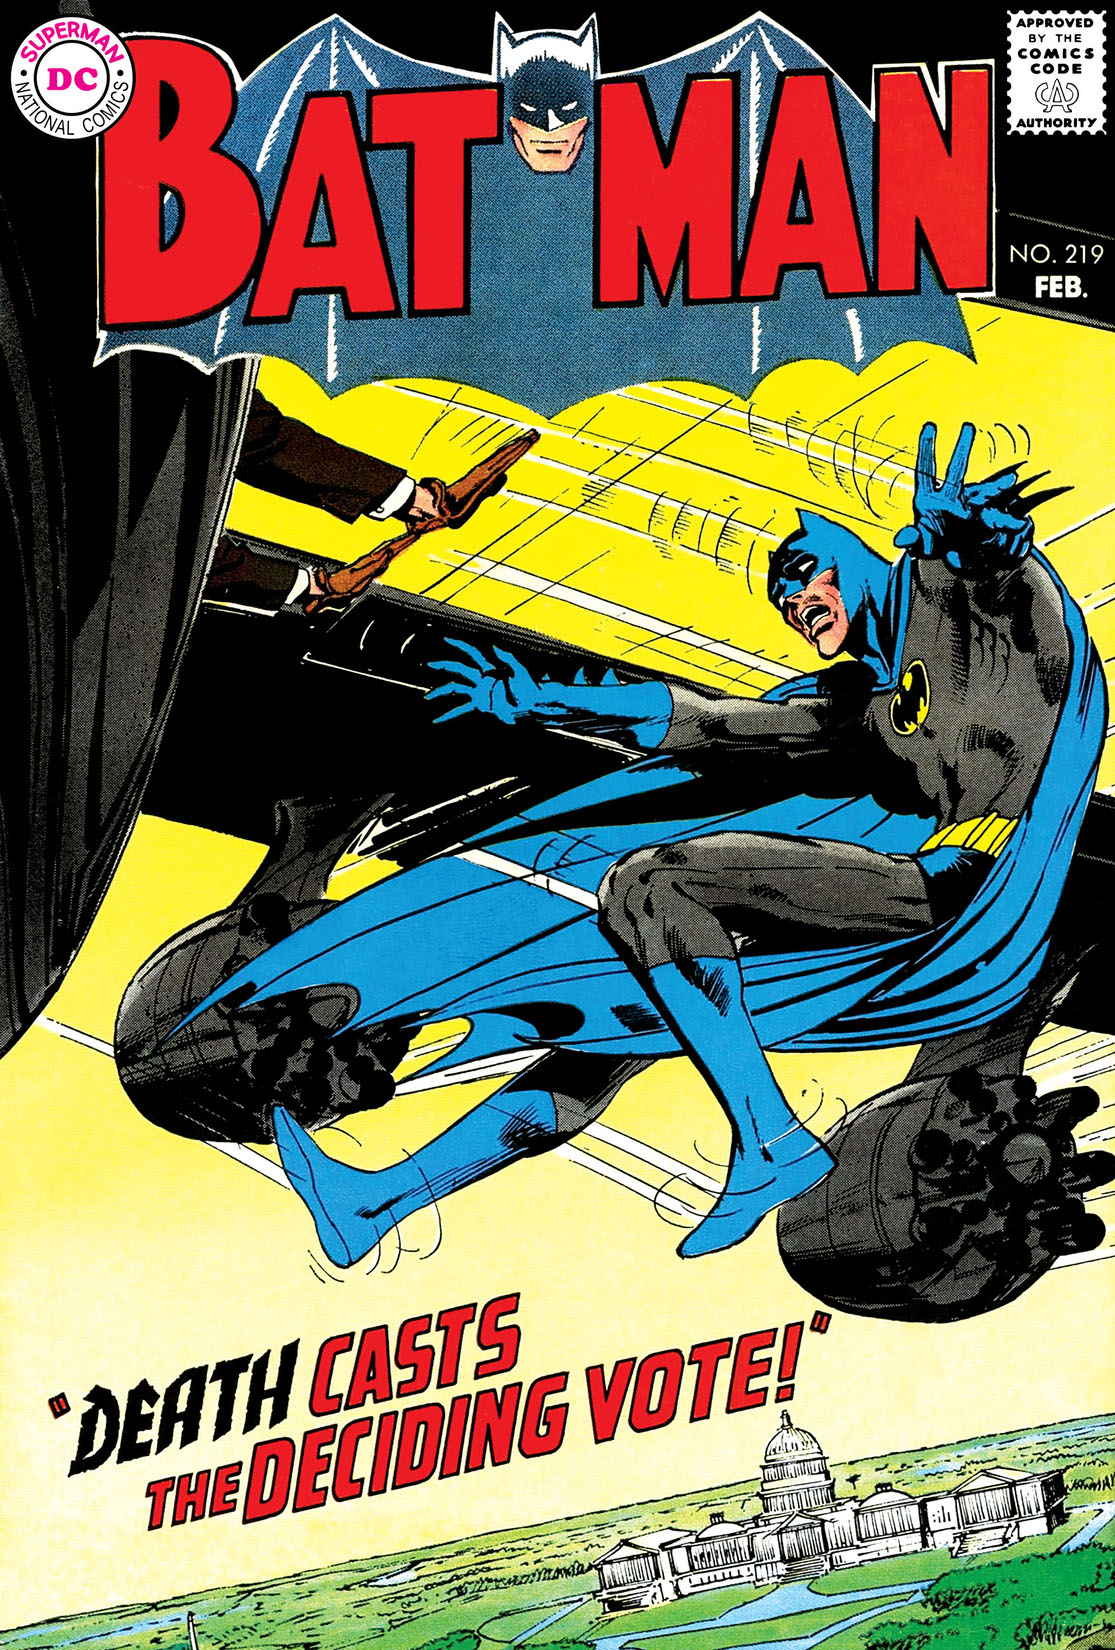 Batman (1940-) #219 preview images